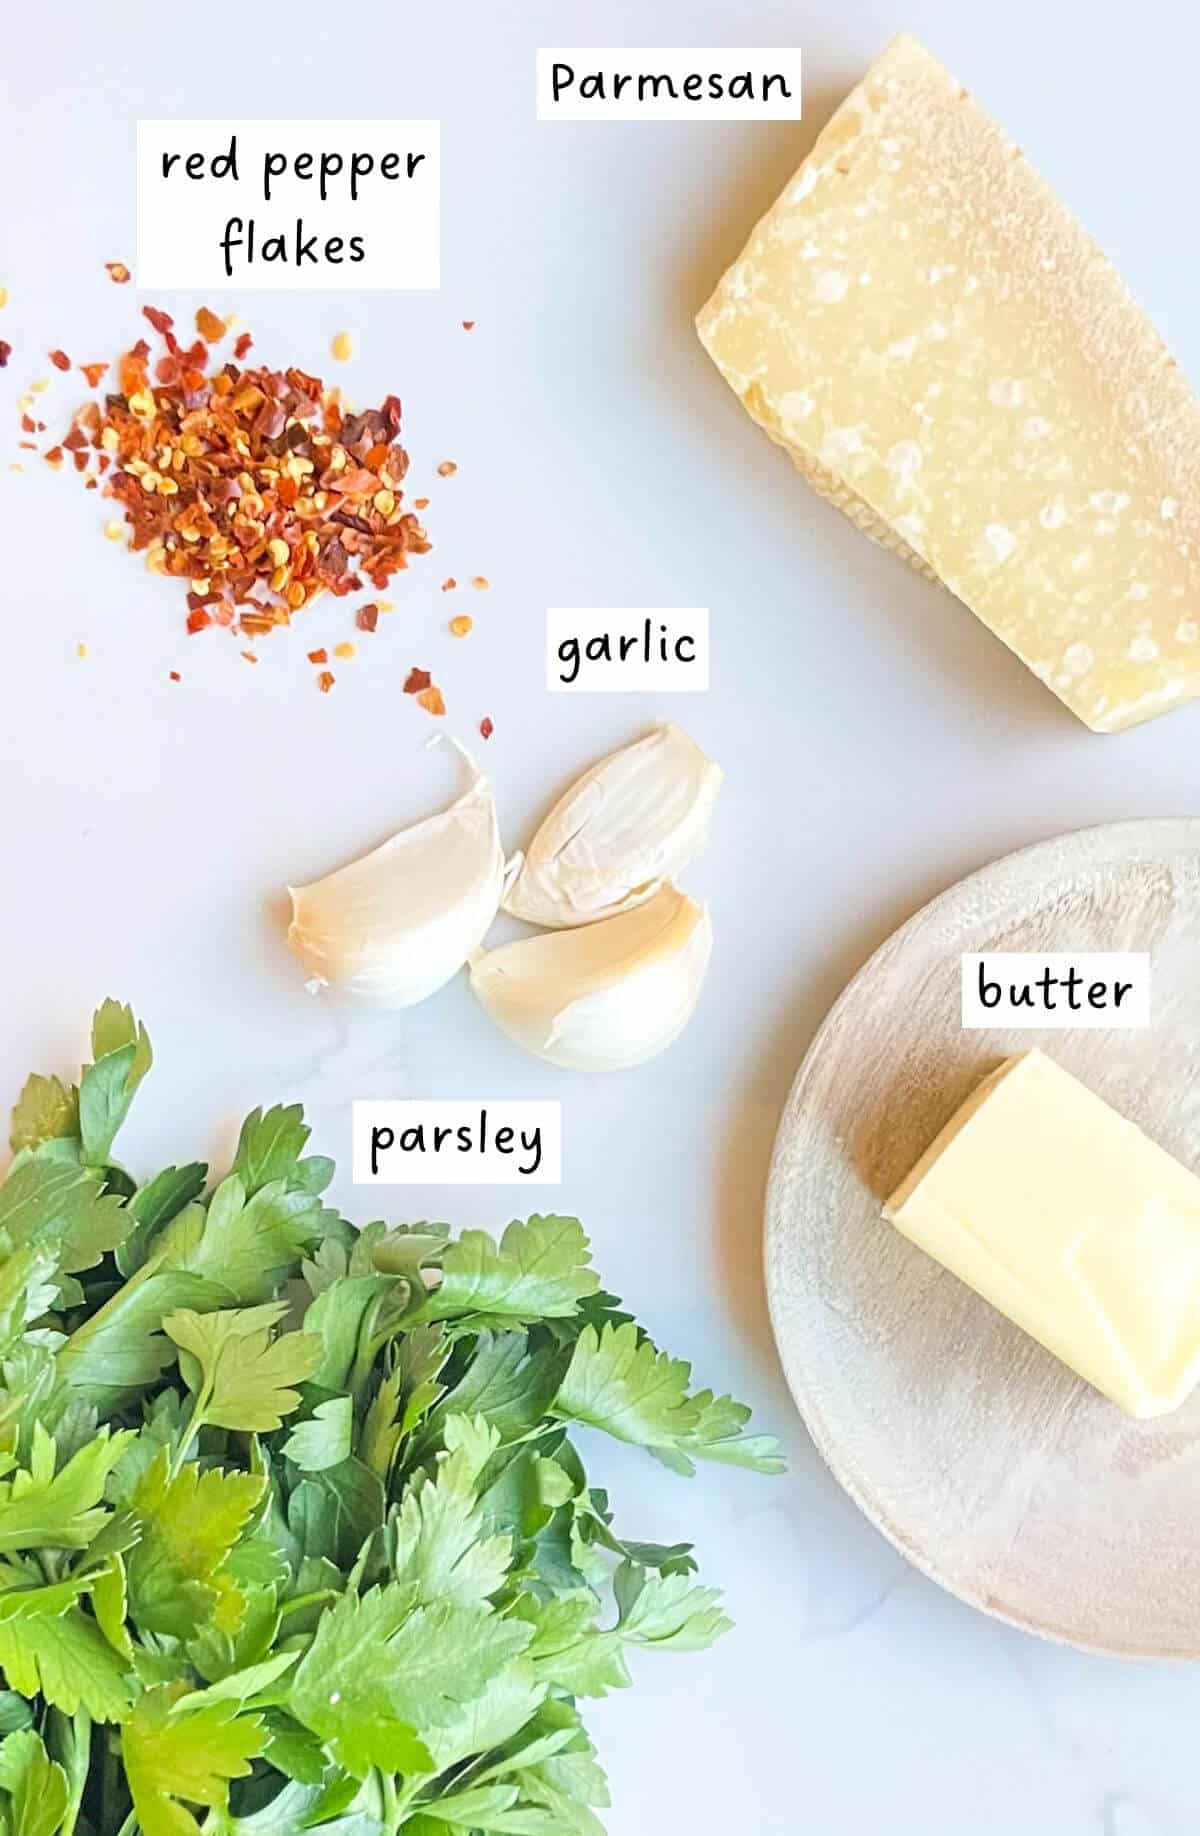 Garlic butter topping ingredients.